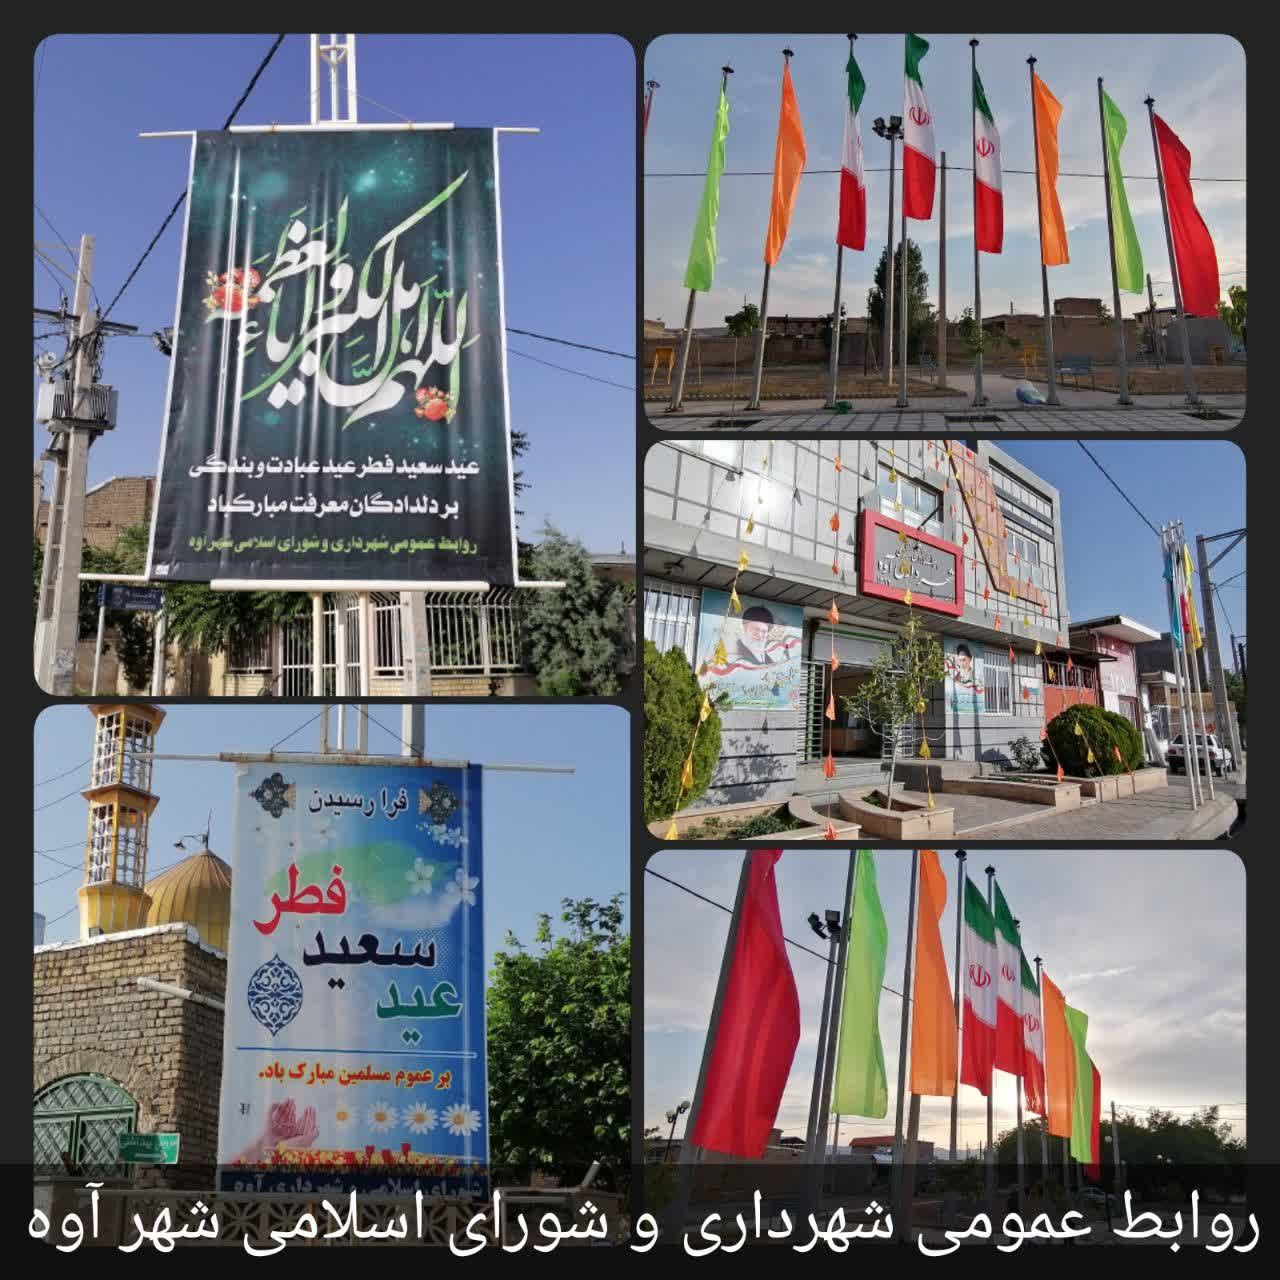 فضاسازی، نصب بنر و پرچم به مناسبت عید سعید فطر در شهر آوه